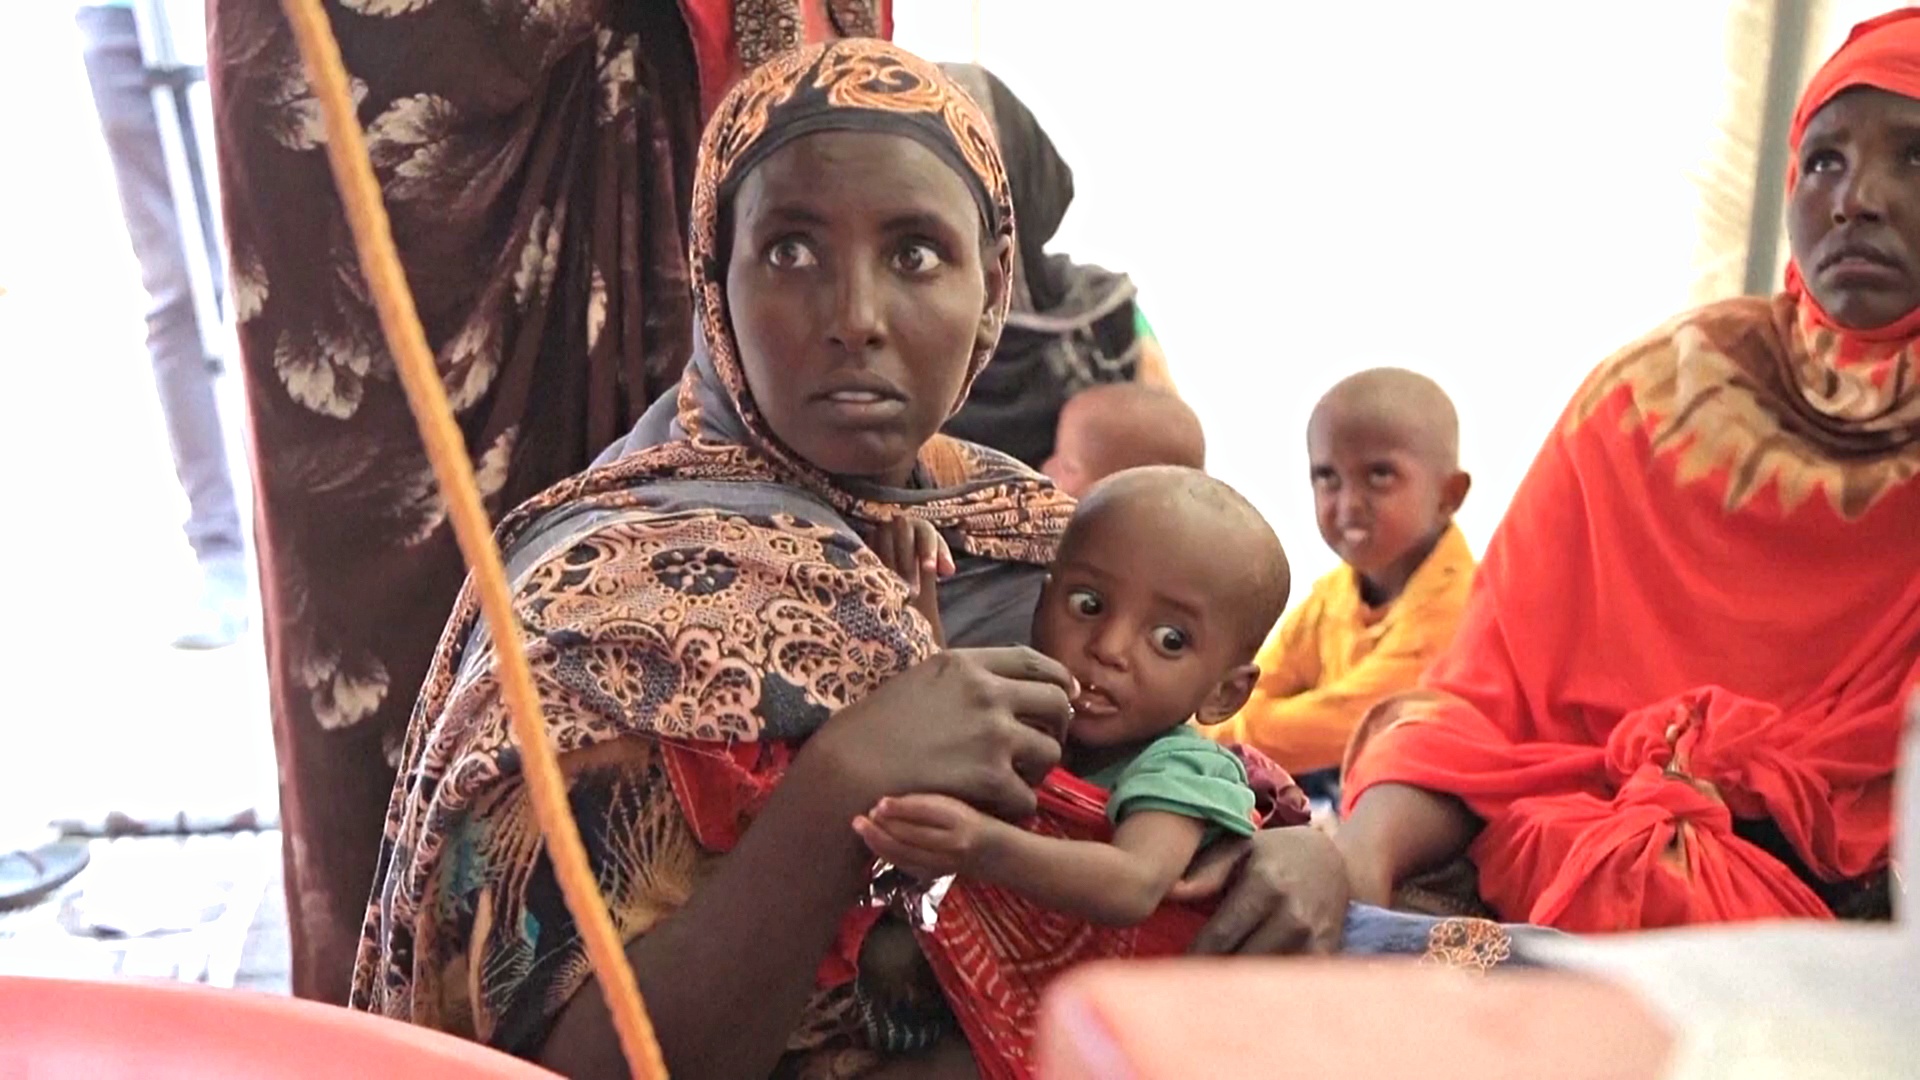 Дети голодают из-за сильнейшей за 40 лет засухи в Эфиопии